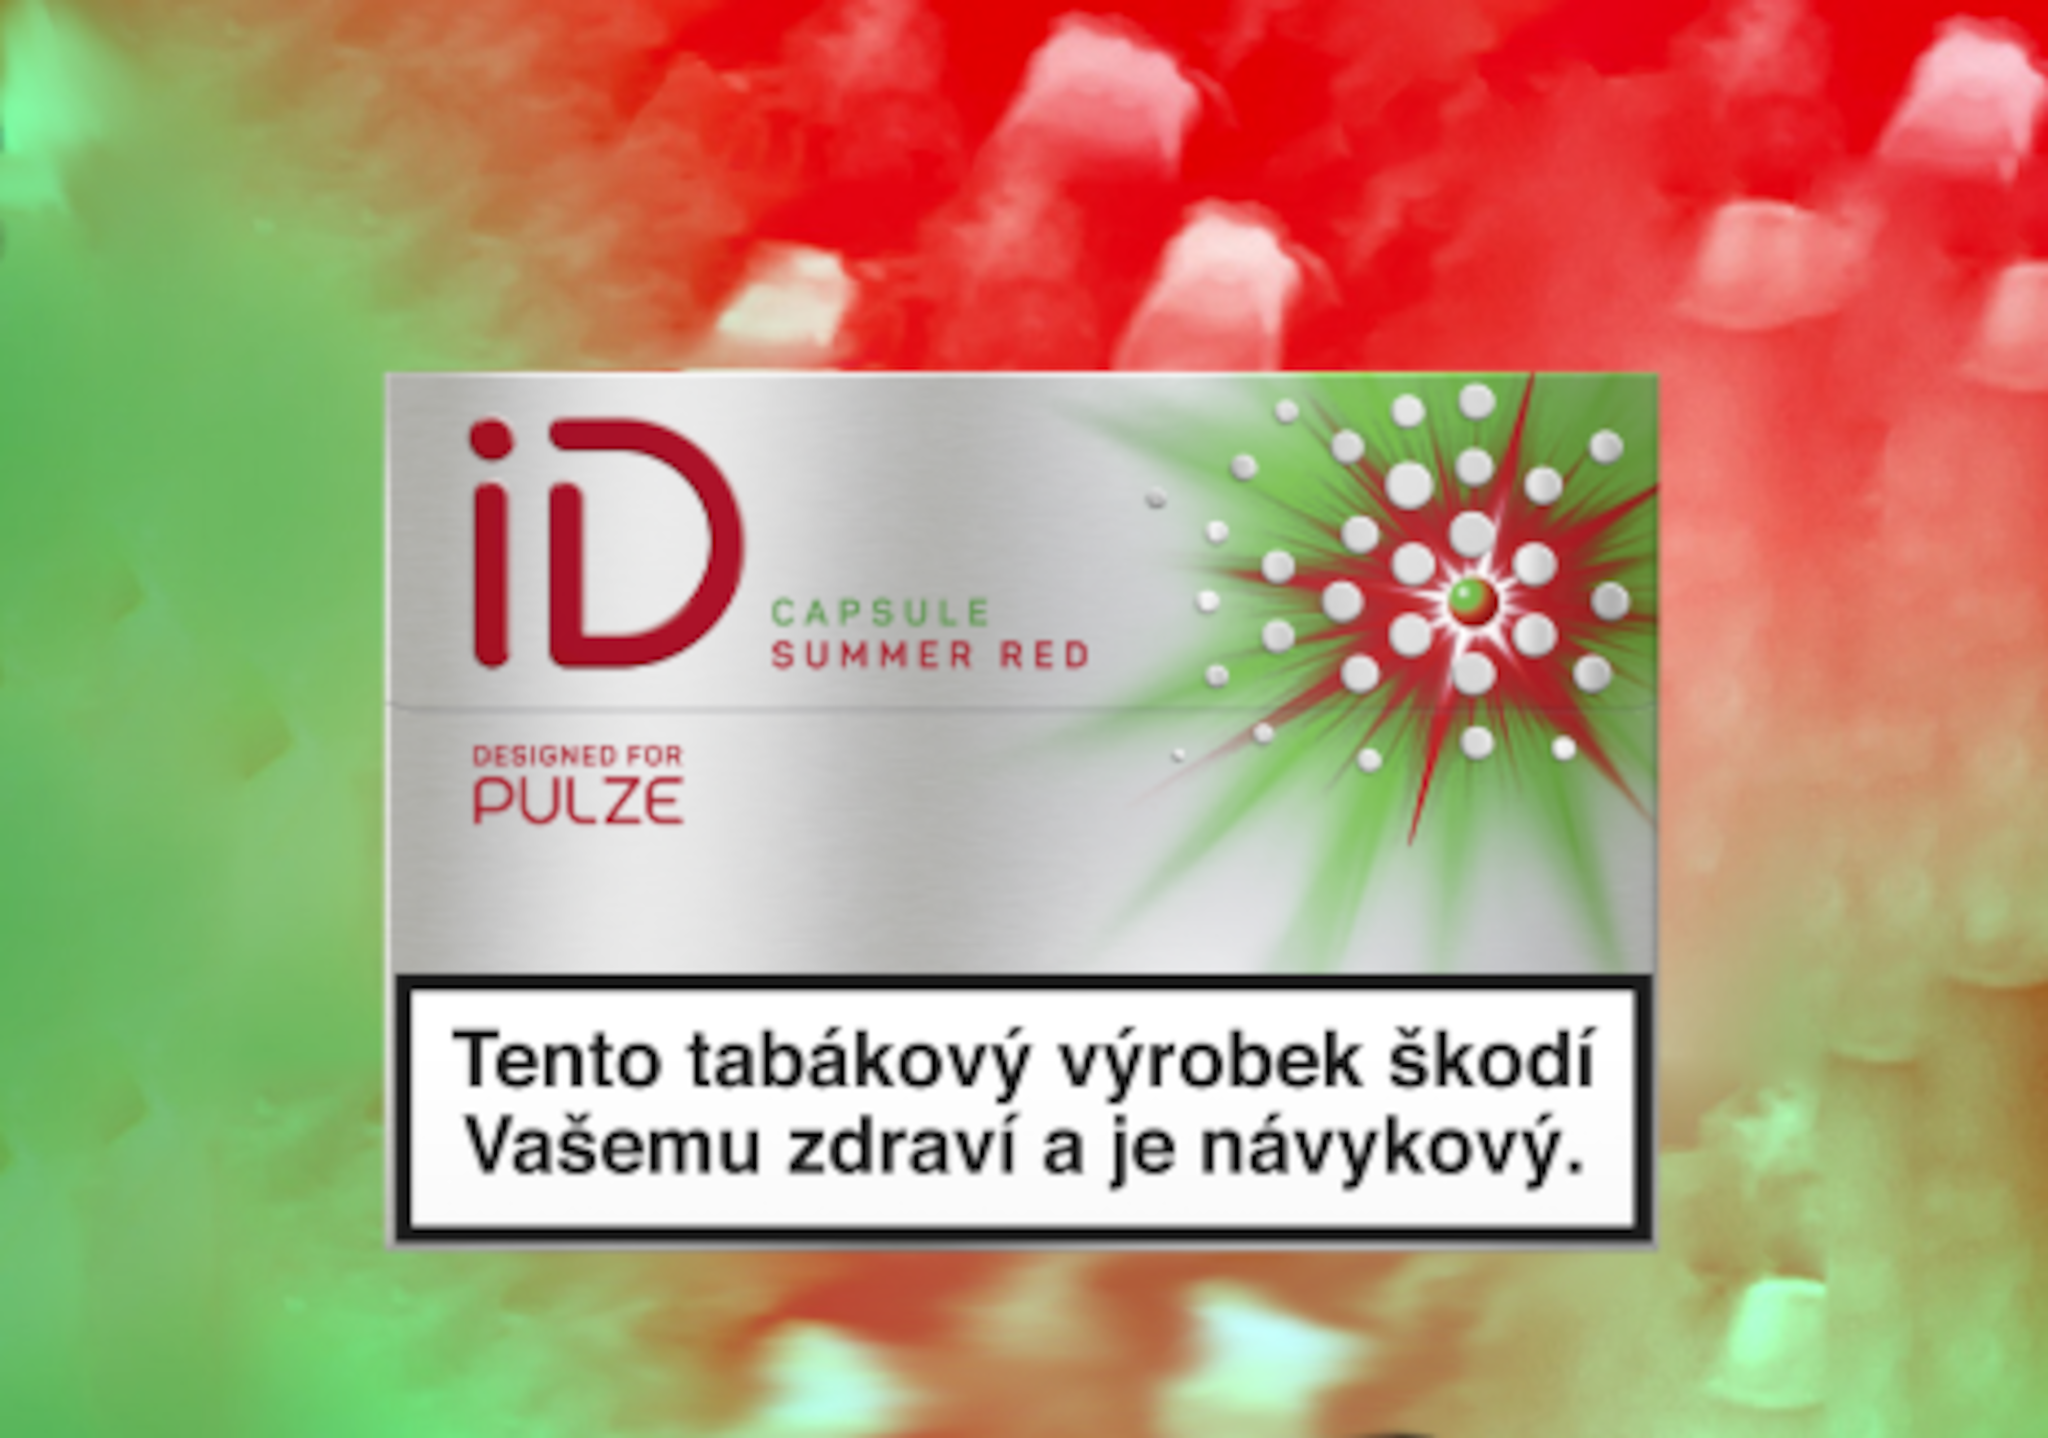 iD CAPSULE SUMMER RED - Mood desktop